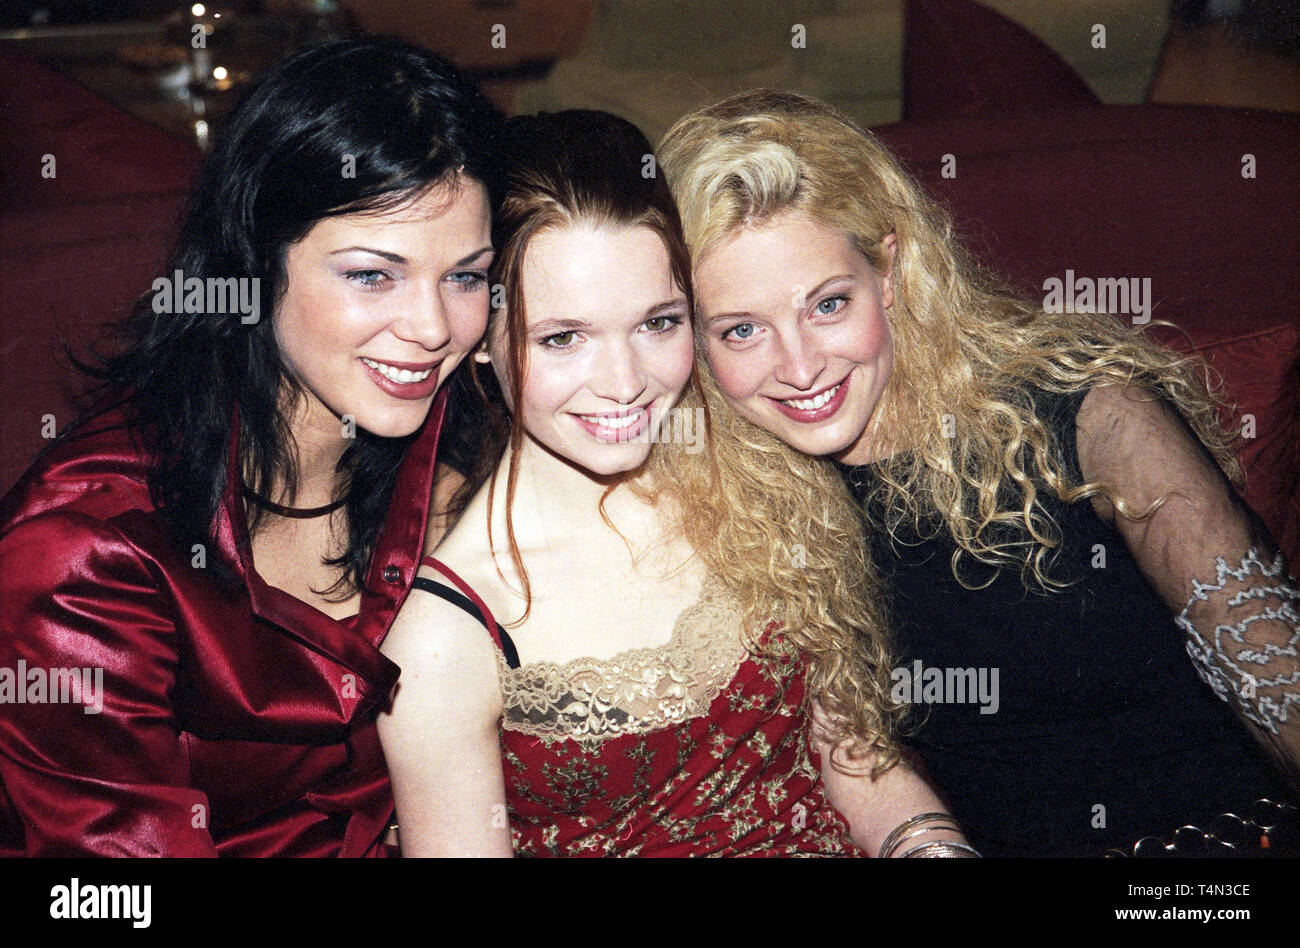 Madchen, Mädchen!, Deutschland 2001, Regie: Dennis Gansel, Darsteller: Jessica Schwarz, Karoline Herfurth, Diana Amft Stock Photo